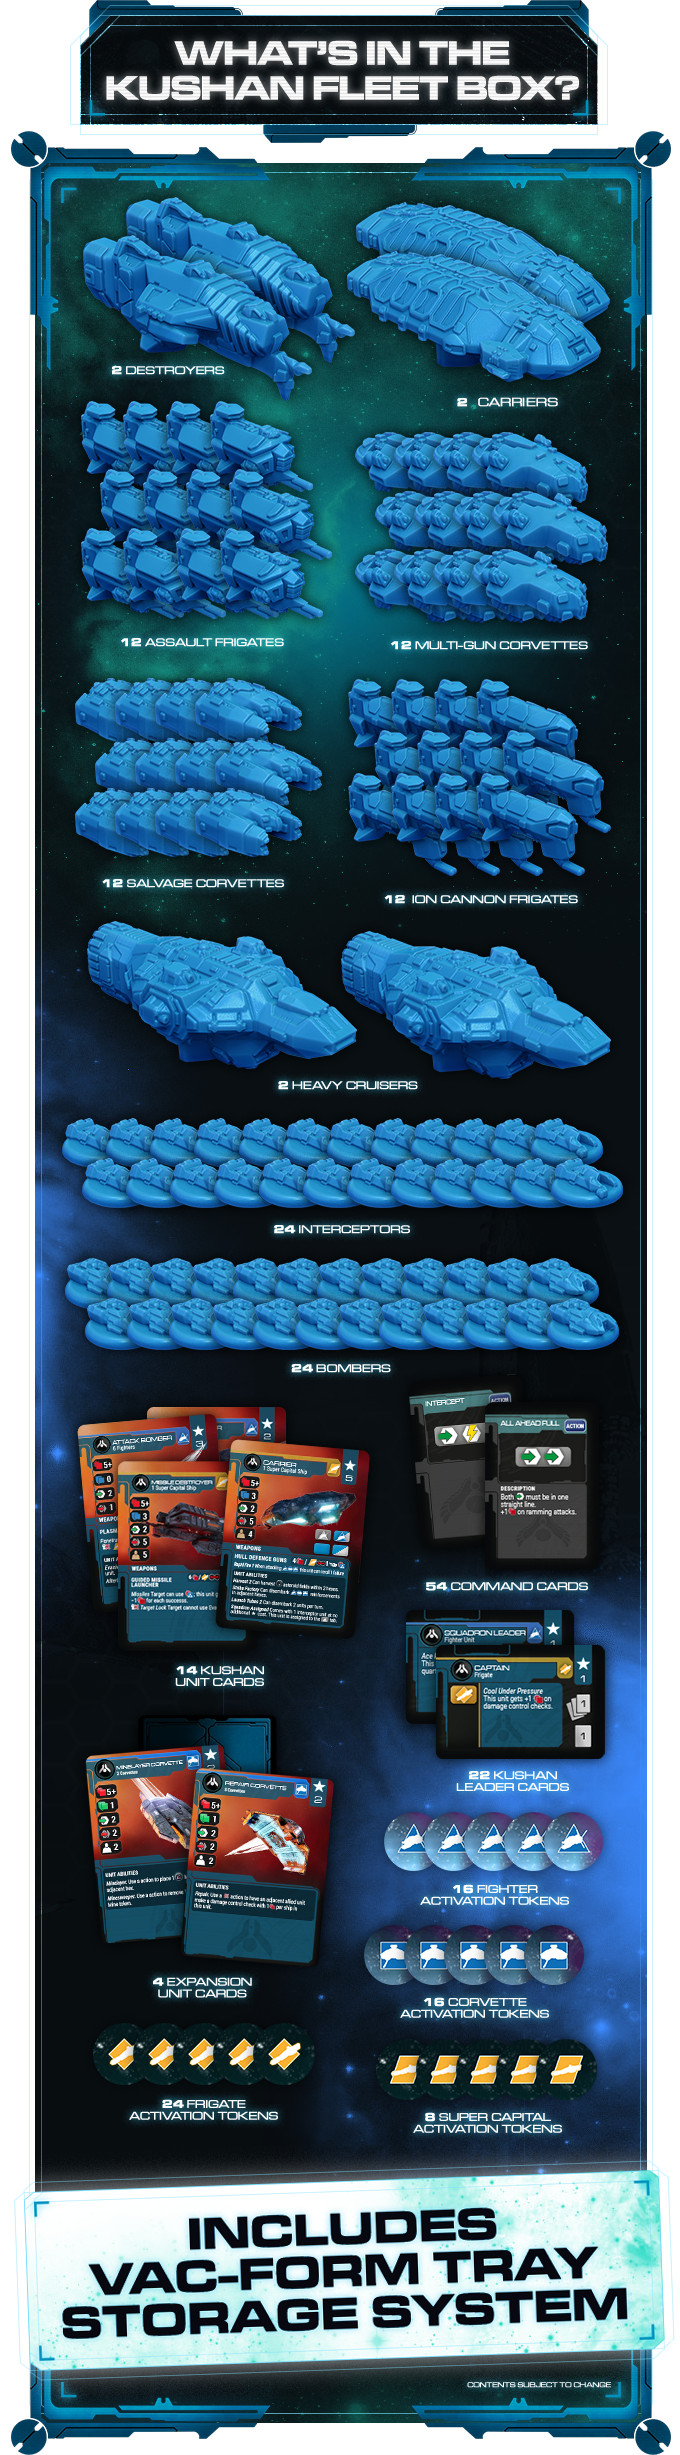 Homeworld Fleet Command: Kushan Fleet Box (Blue)